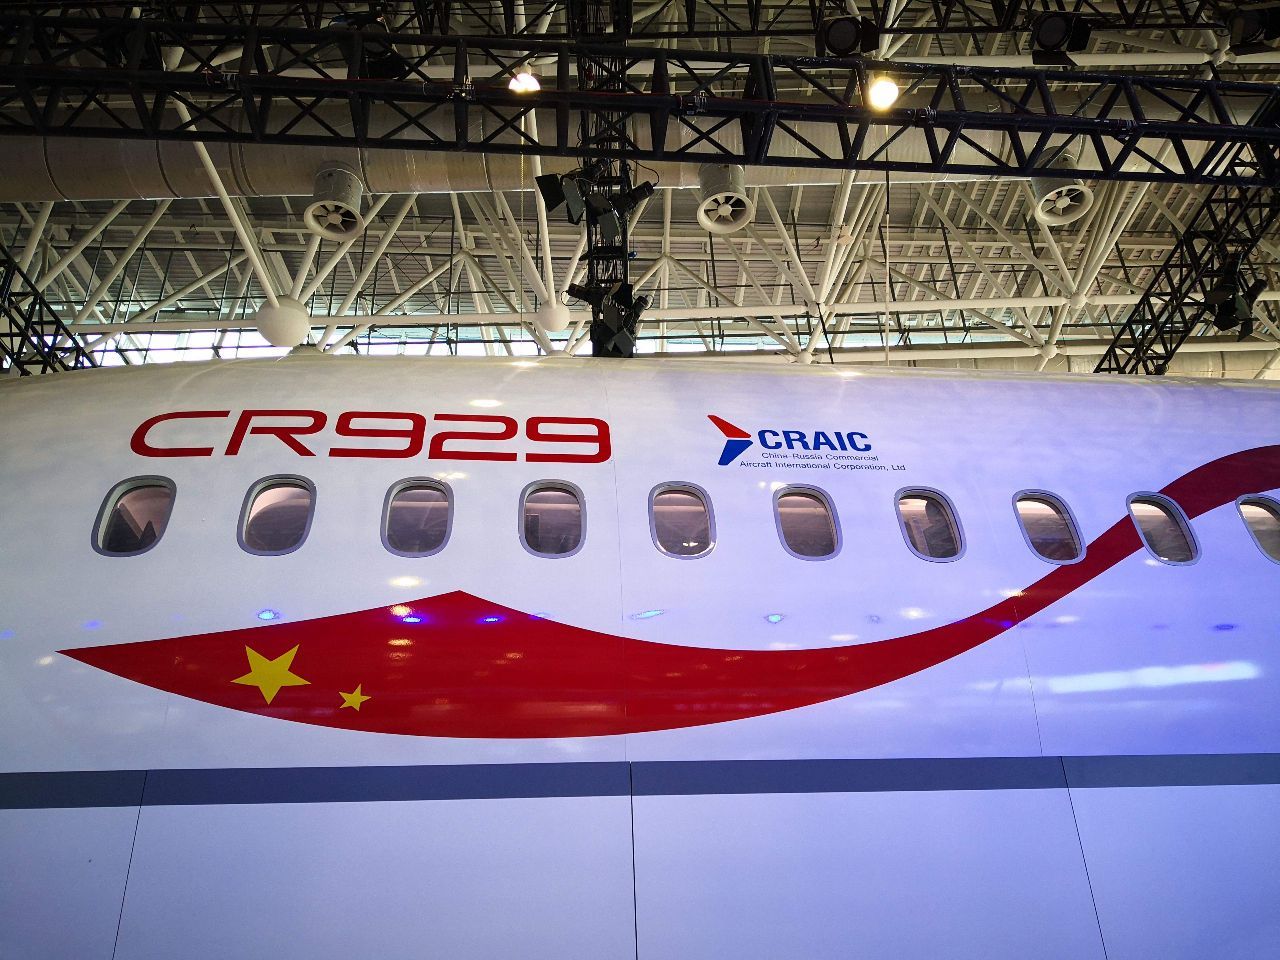 cr929客机是中俄合力研发的命名却有深意未来将以中国为主